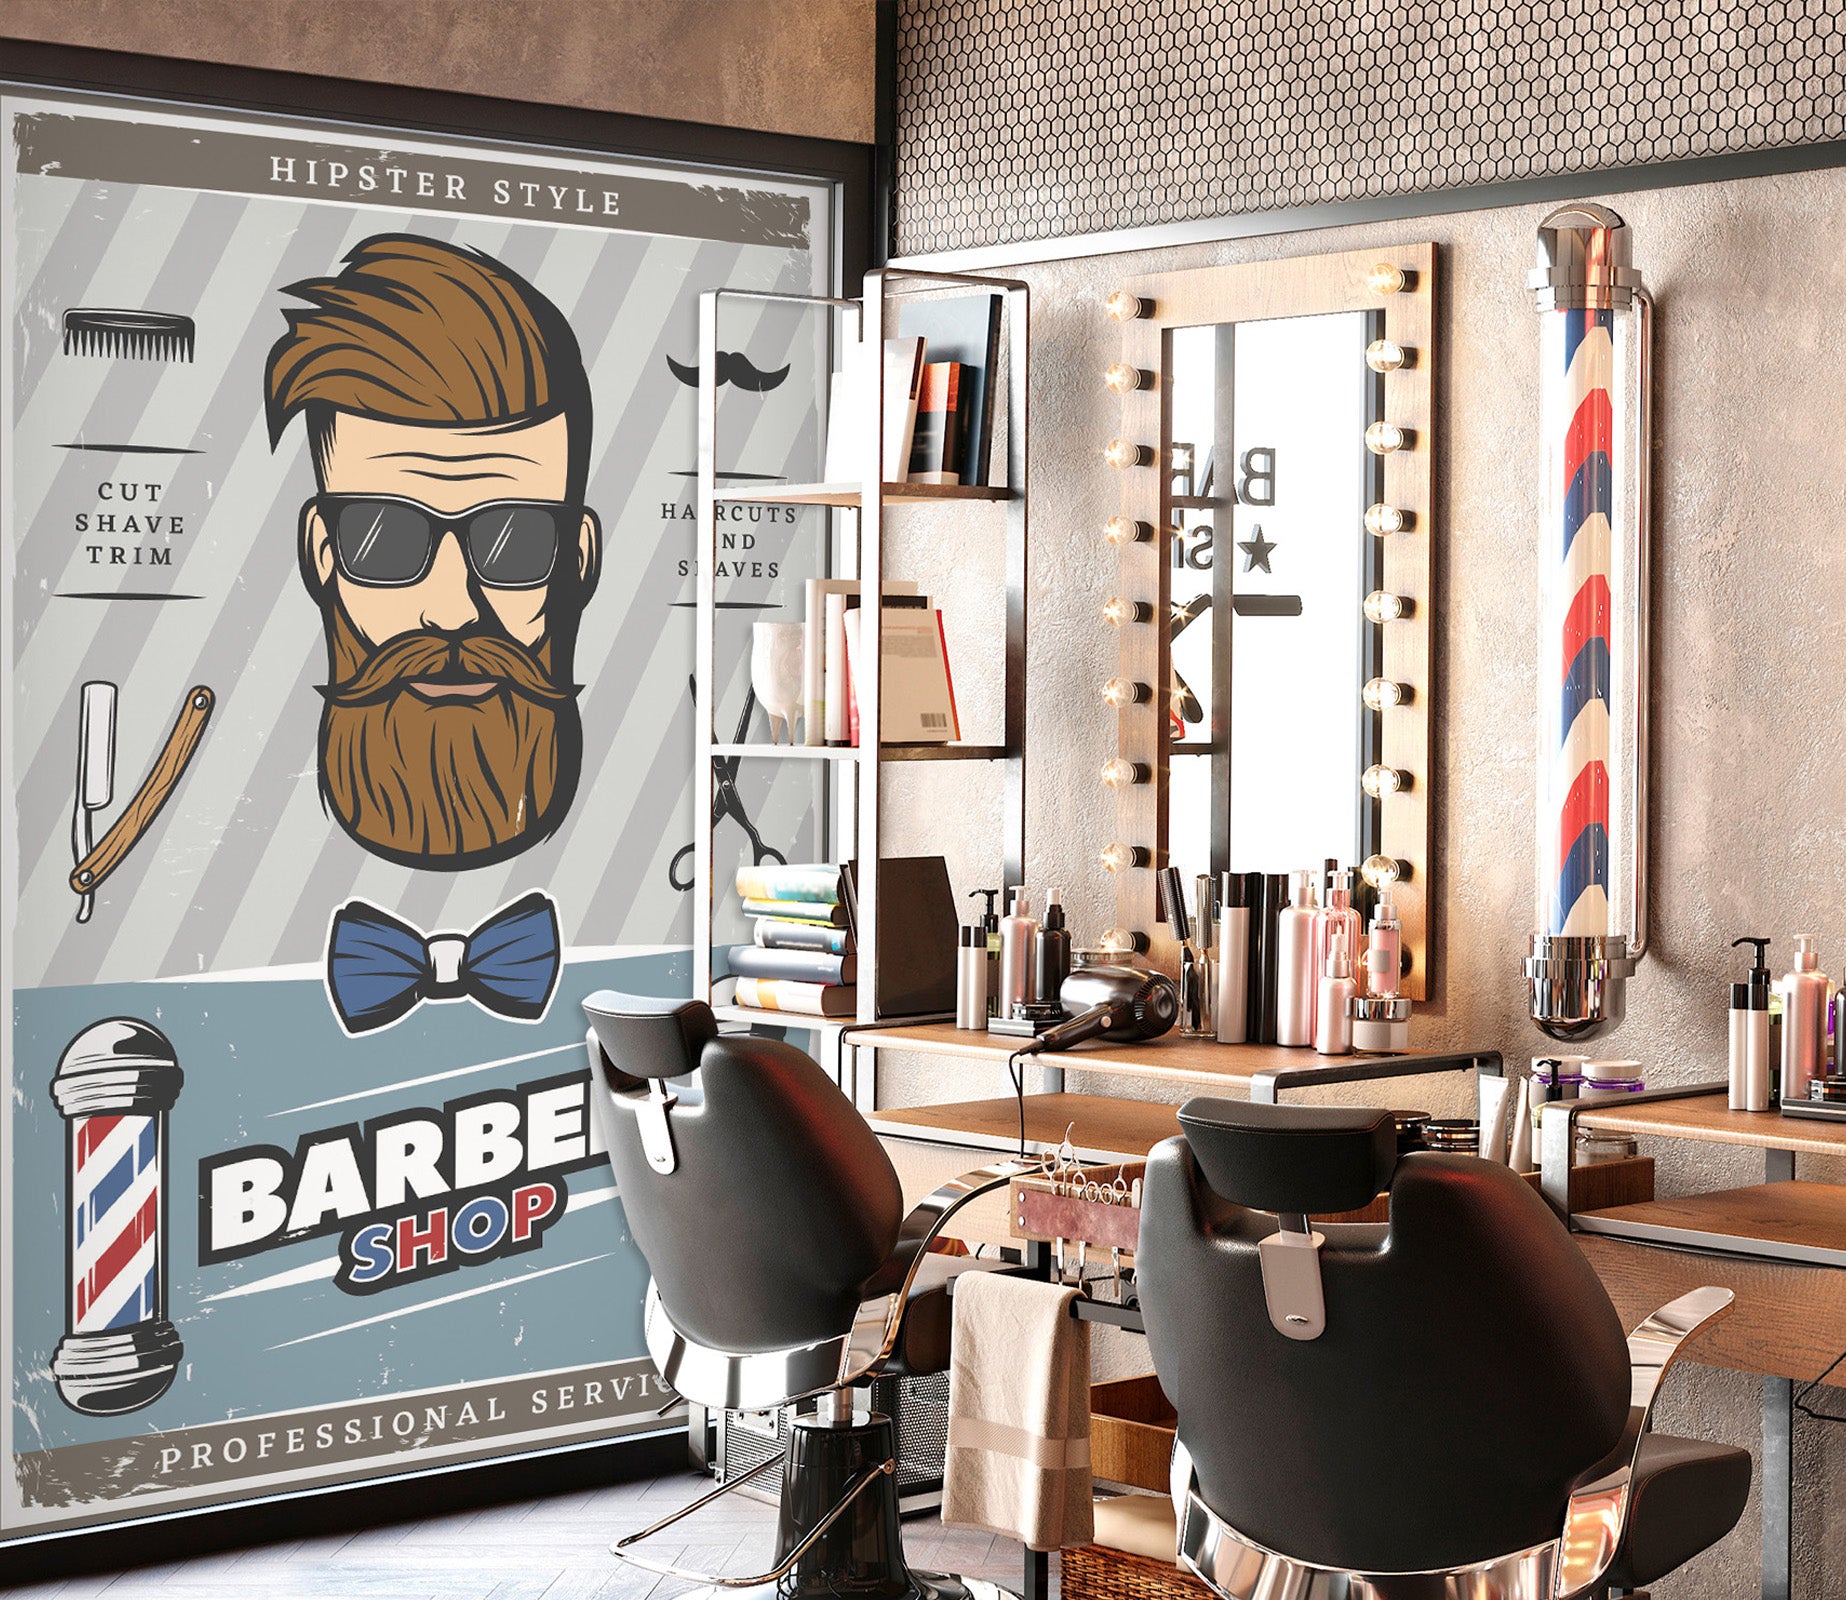 3D Bearded Man Bow 115212 Barber Shop Wall Murals